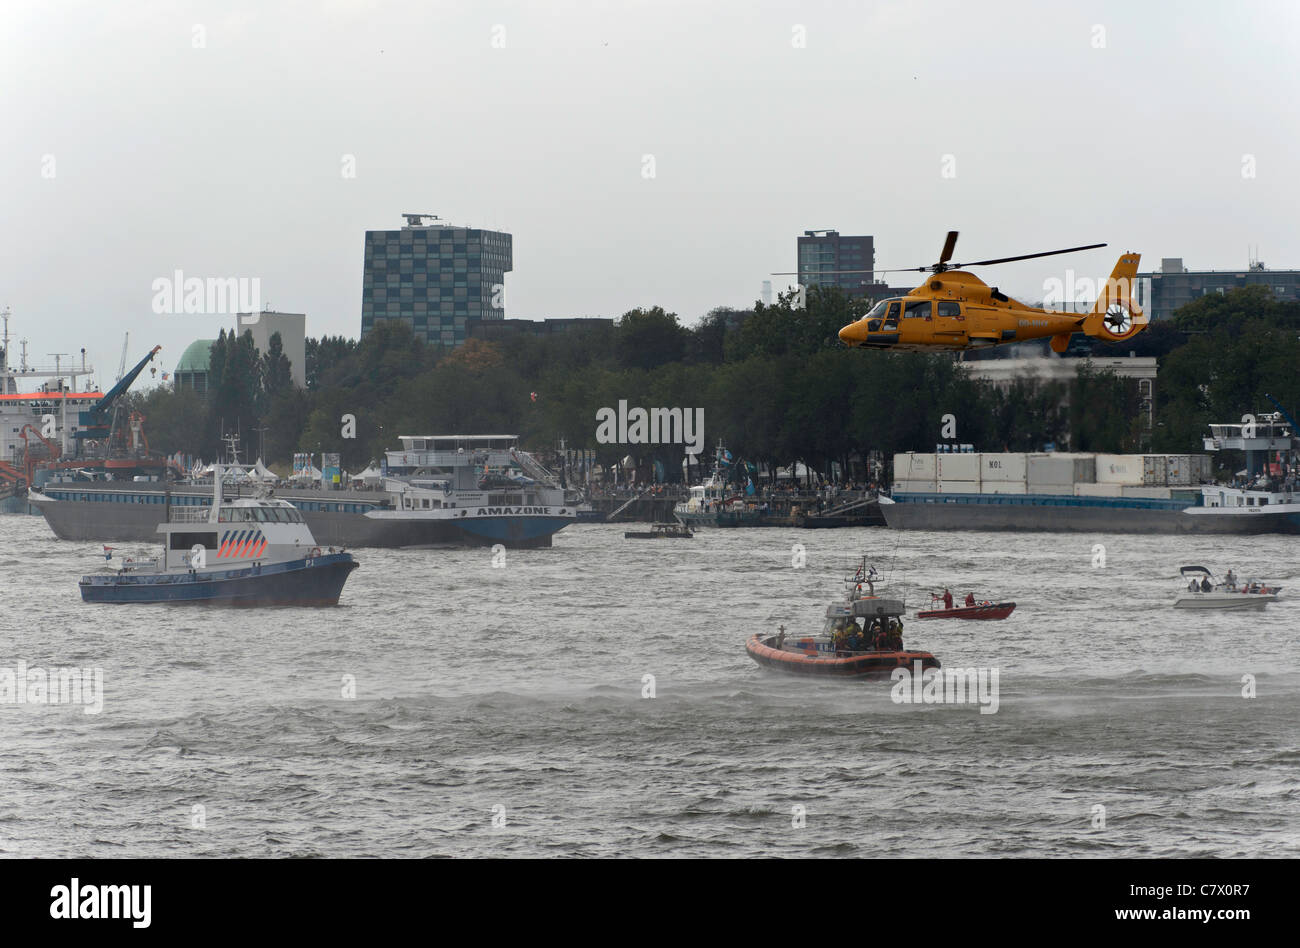 Dimostrazione di un'operazione di salvataggio con un elicottero nel porto di Rotterdam Foto Stock